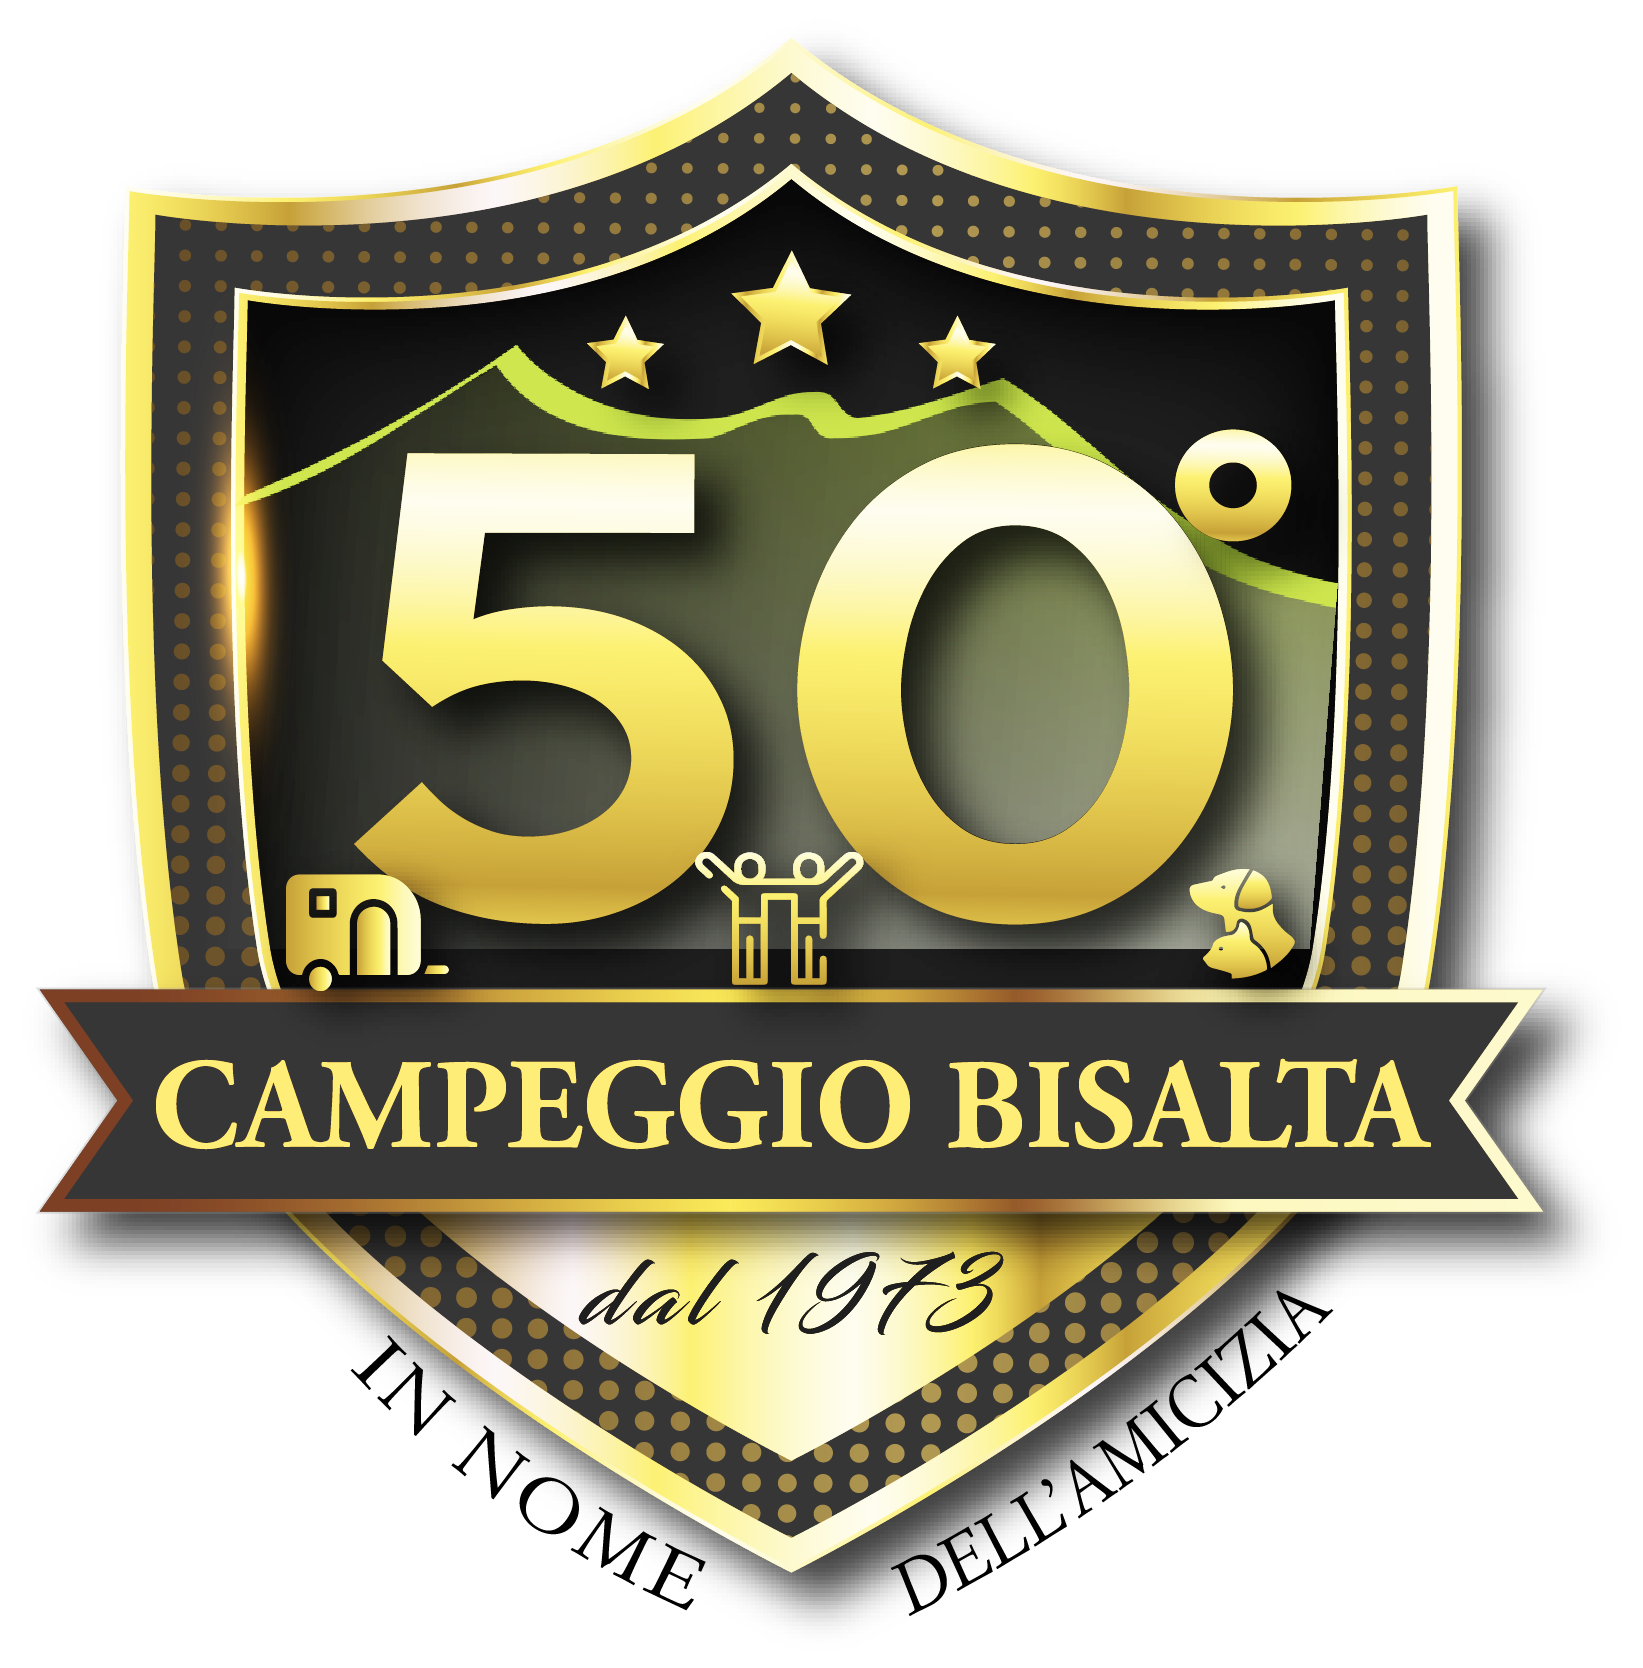 The campsite celebrates its 50th anniversary